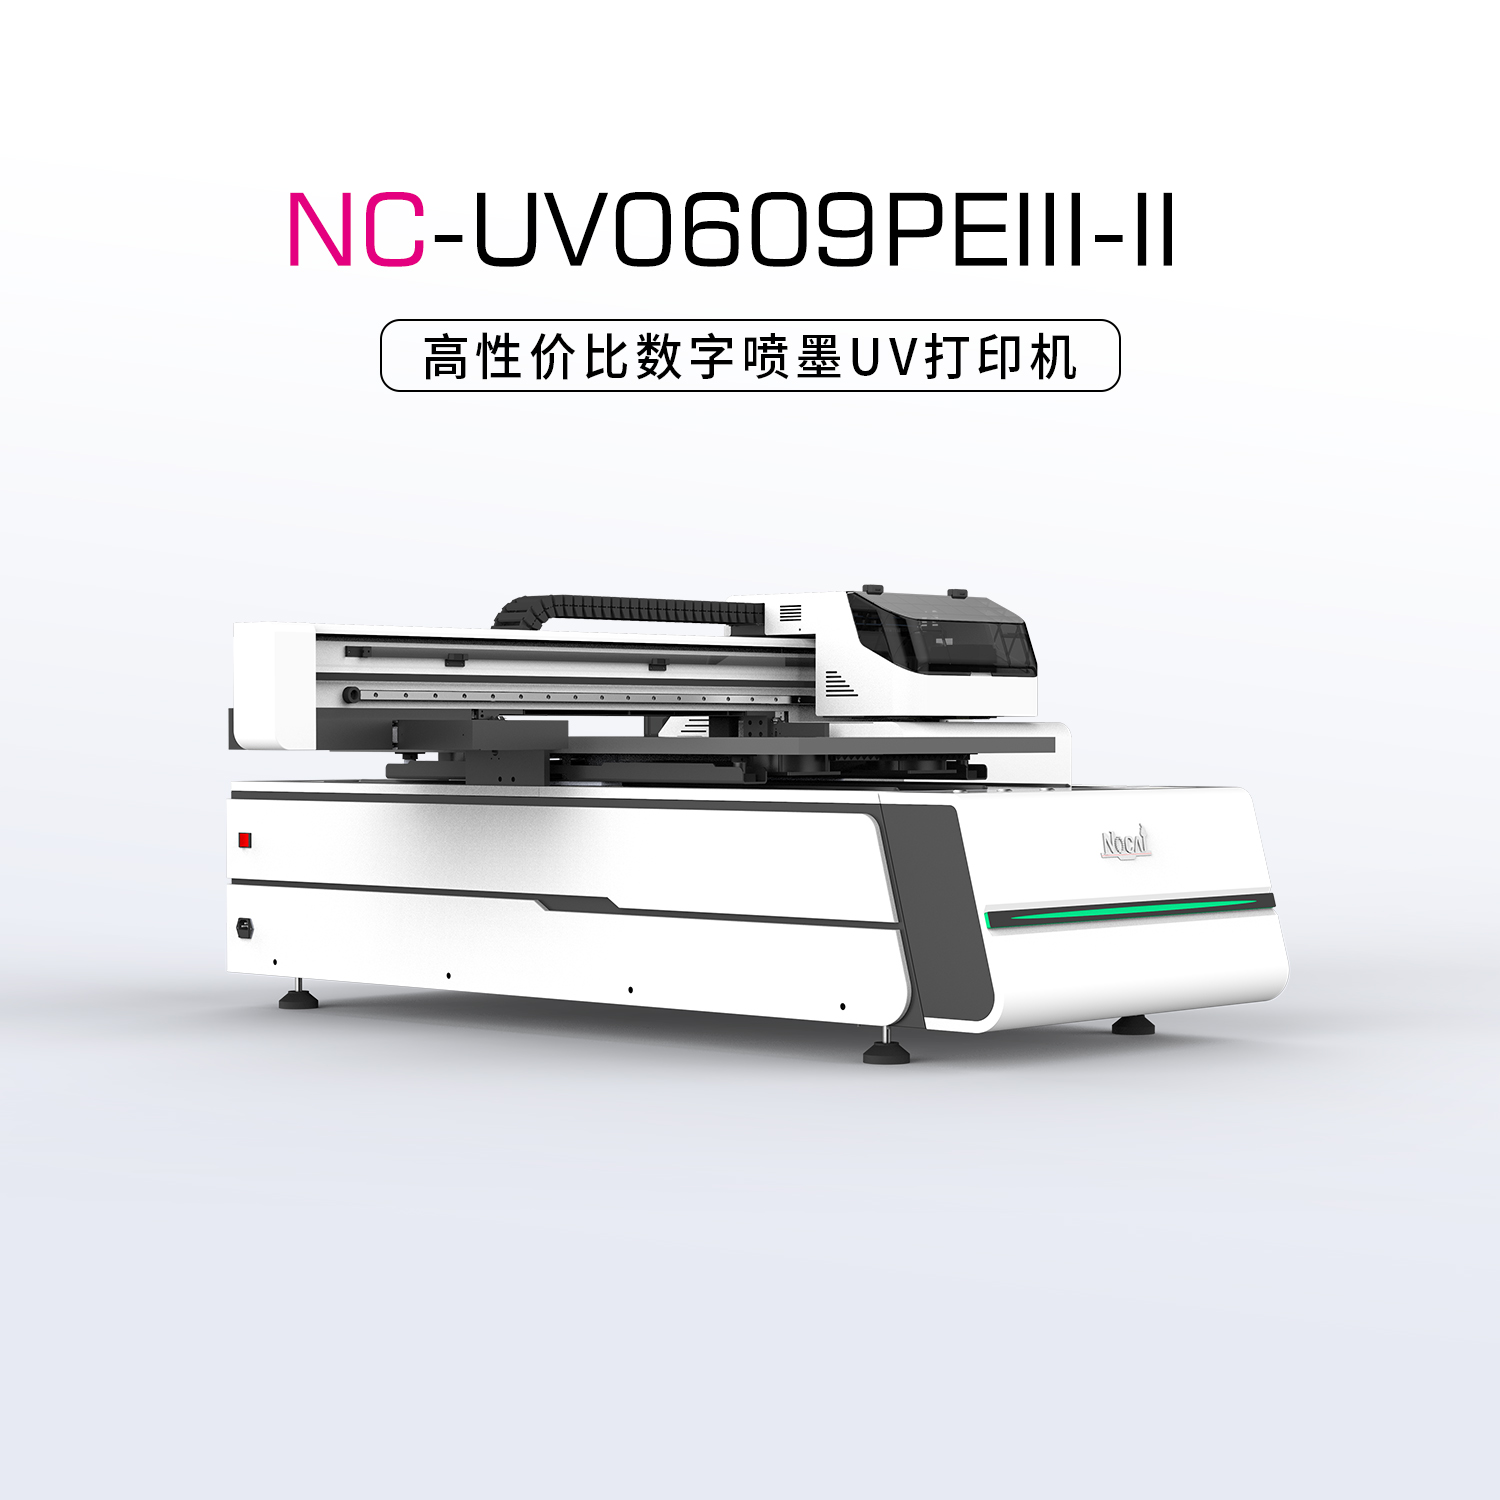 NC-UV0609PEⅢ-Ⅱ小型UV平板打印机